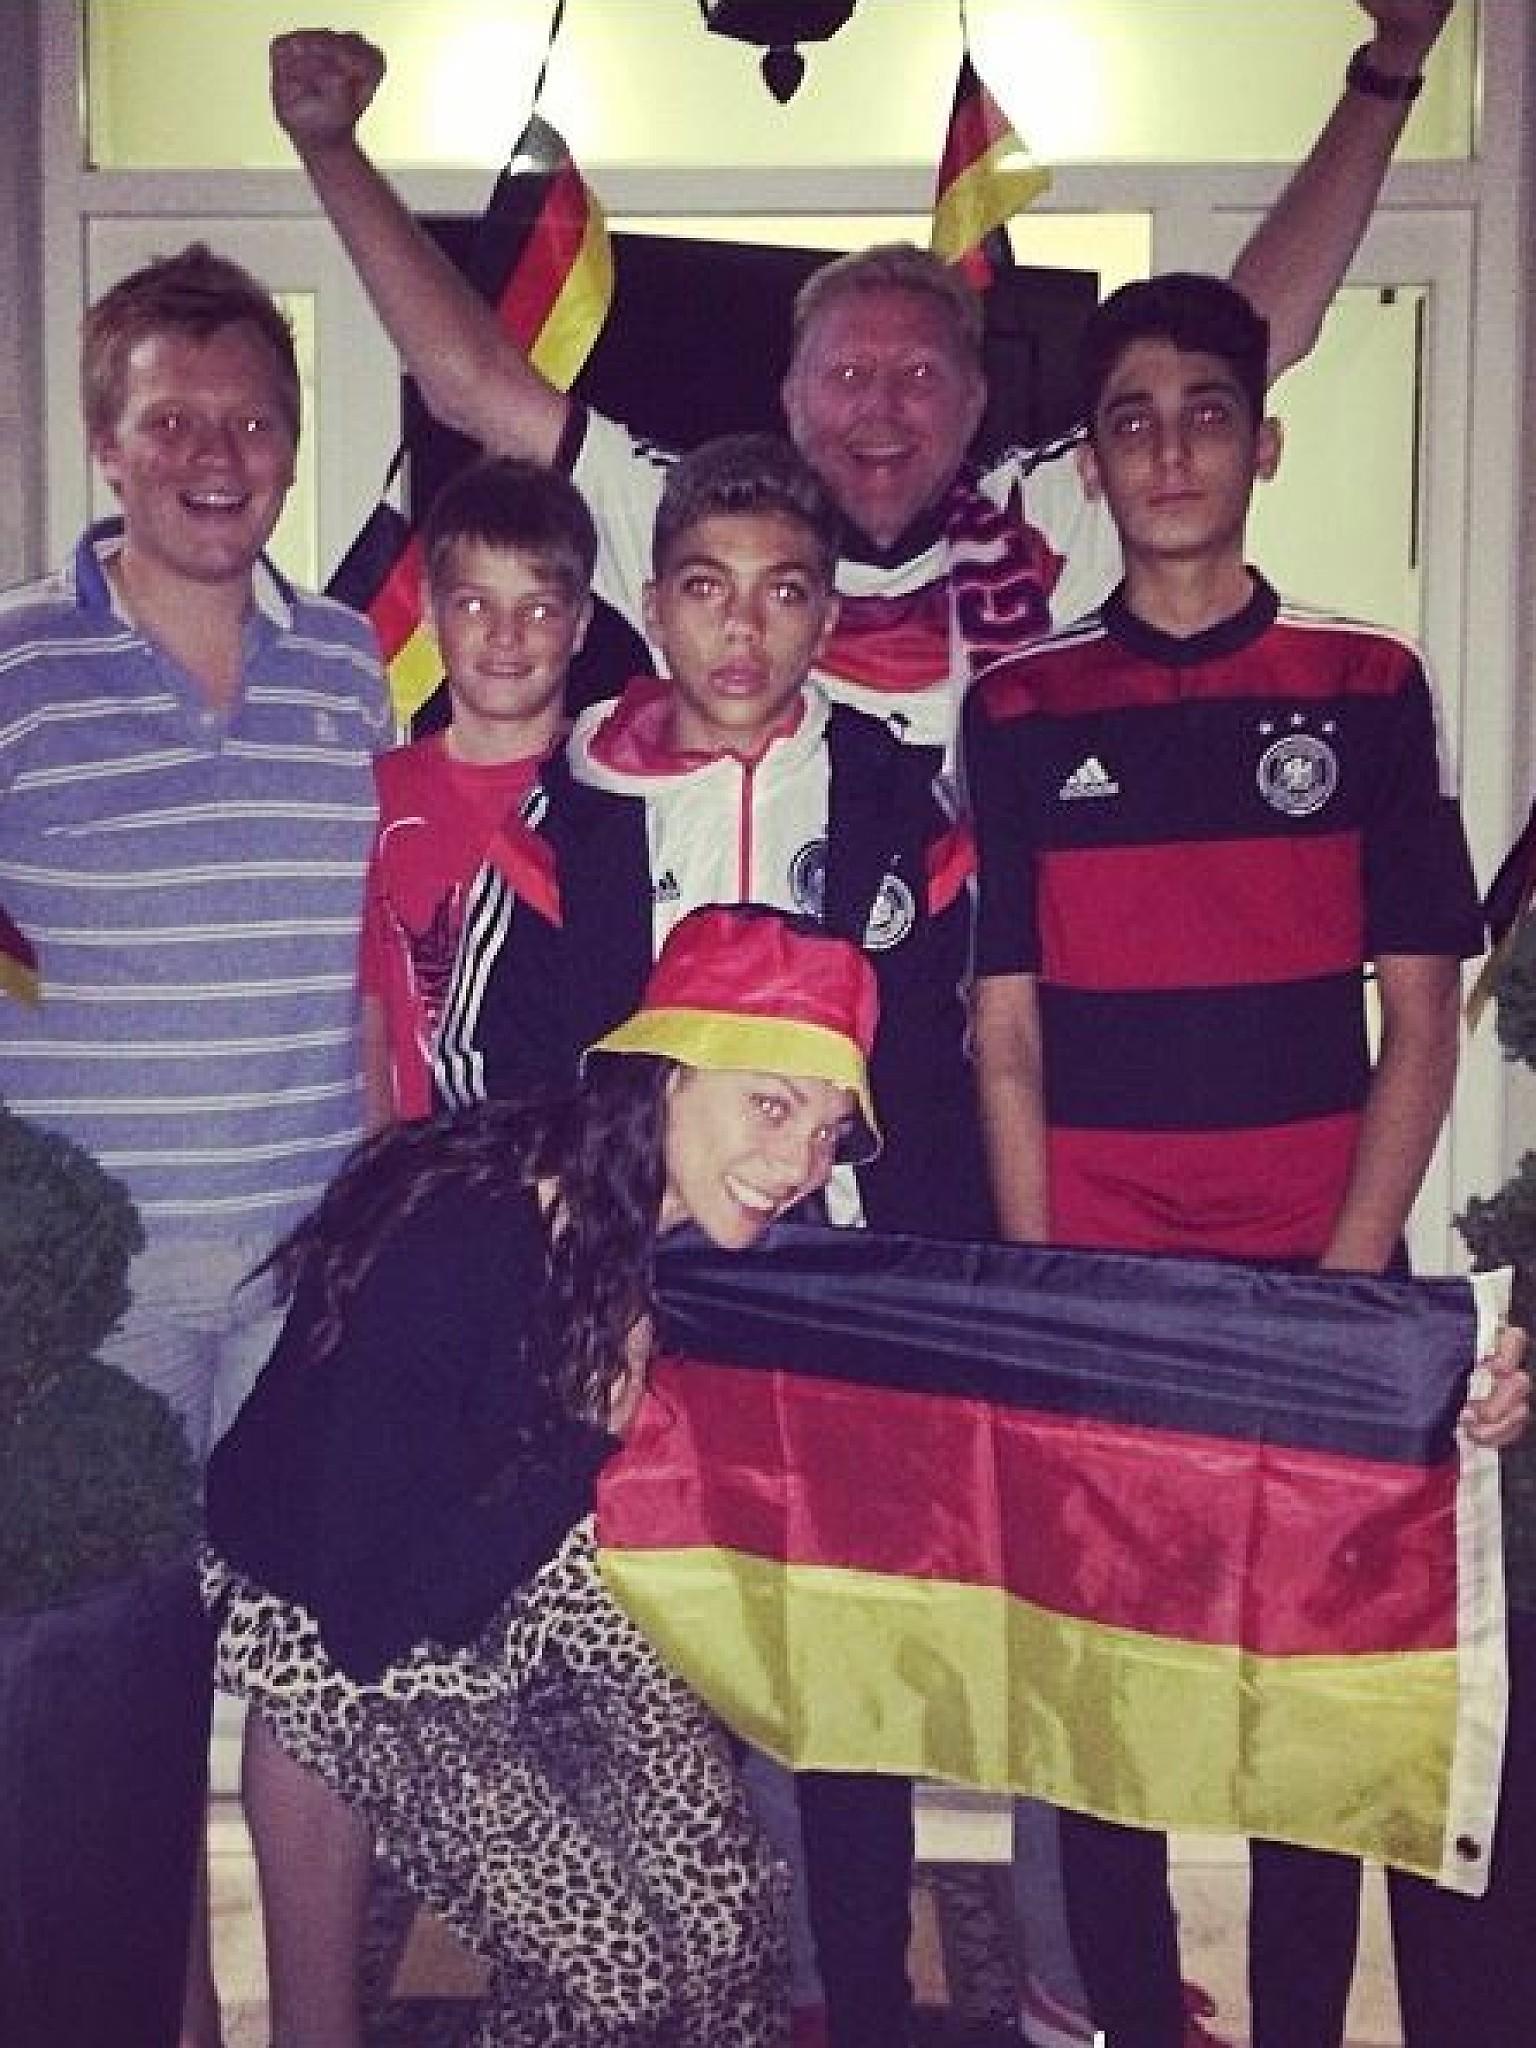 Deutschland Brasilien Spiel Promi Reaktionen WM